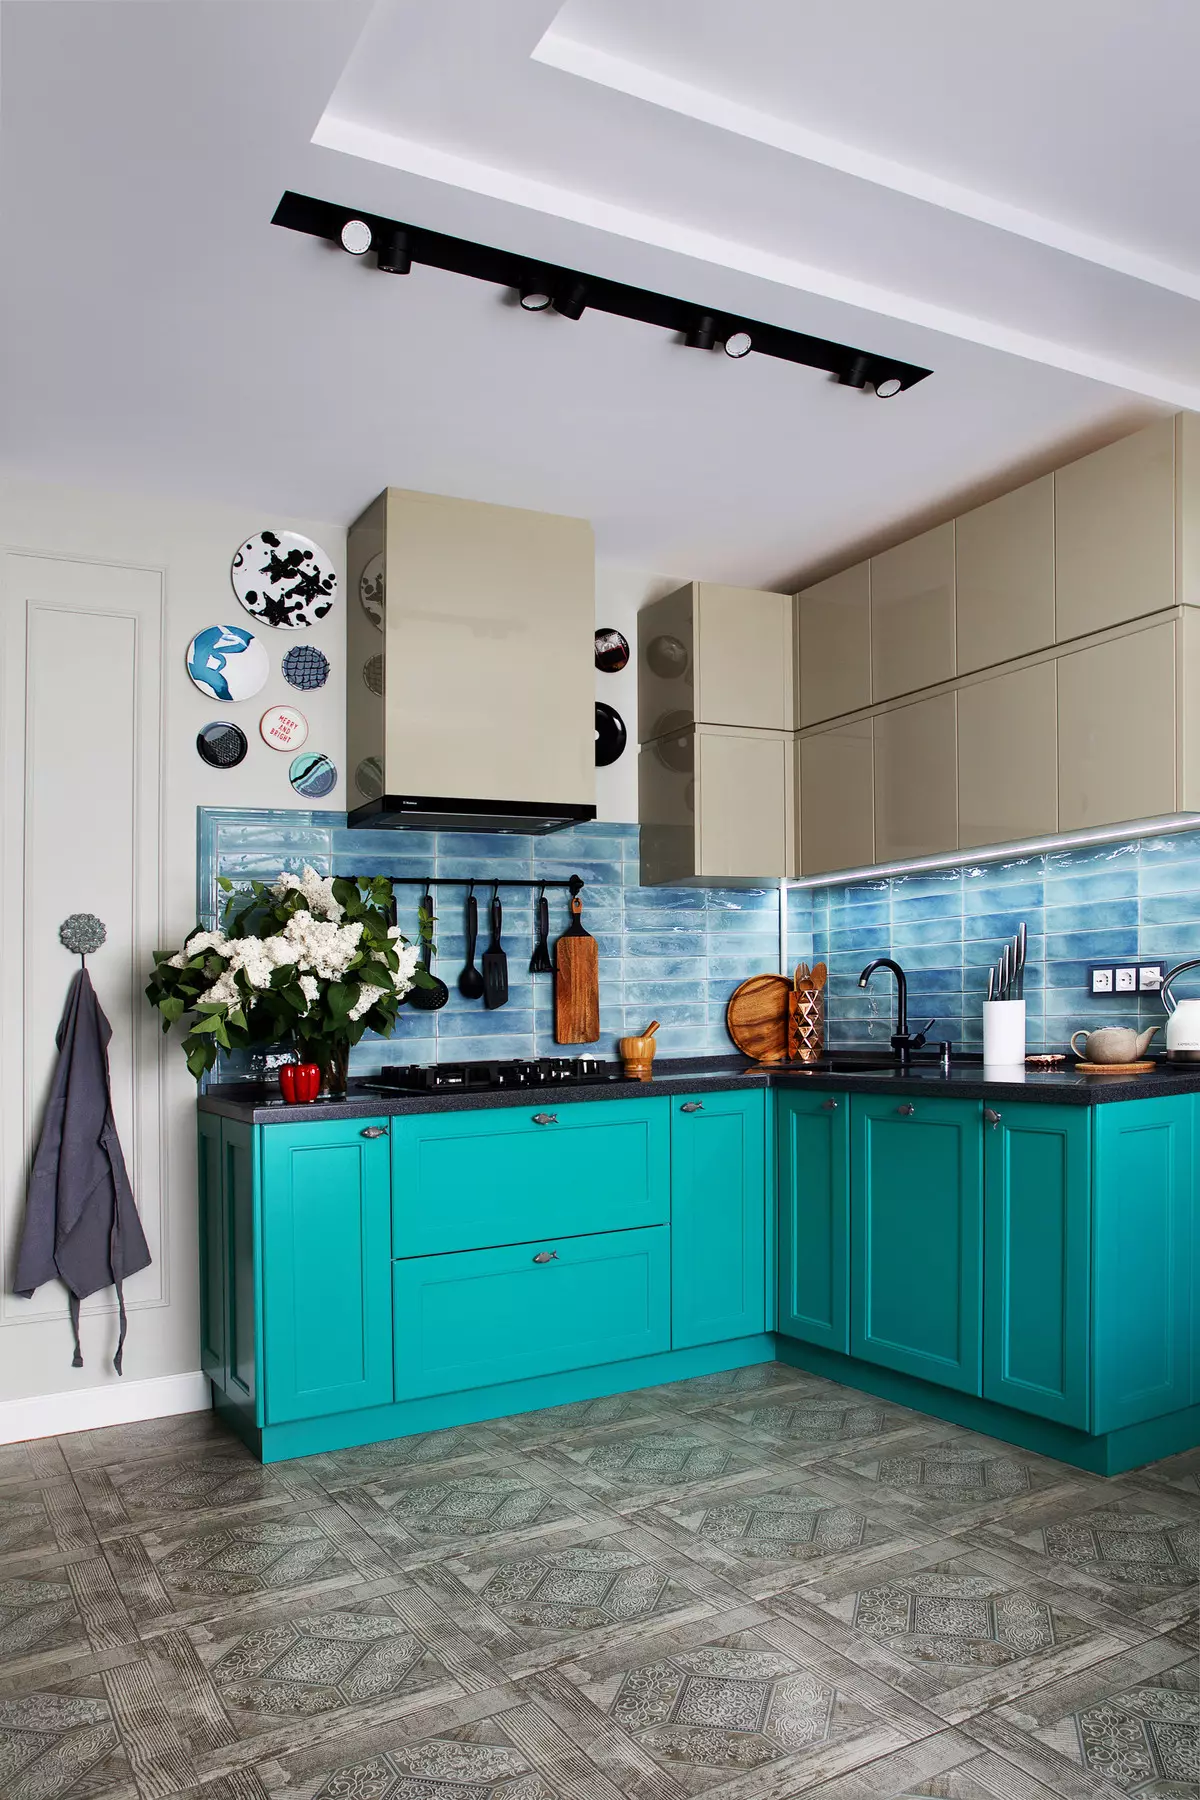 Bucătărie albastră (82 fotografii): Ce culori sunt combinate în interiorul unui set de bucătărie albastră? Design de bucătărie în tonuri albastre ușoare și întunecate 9555_22